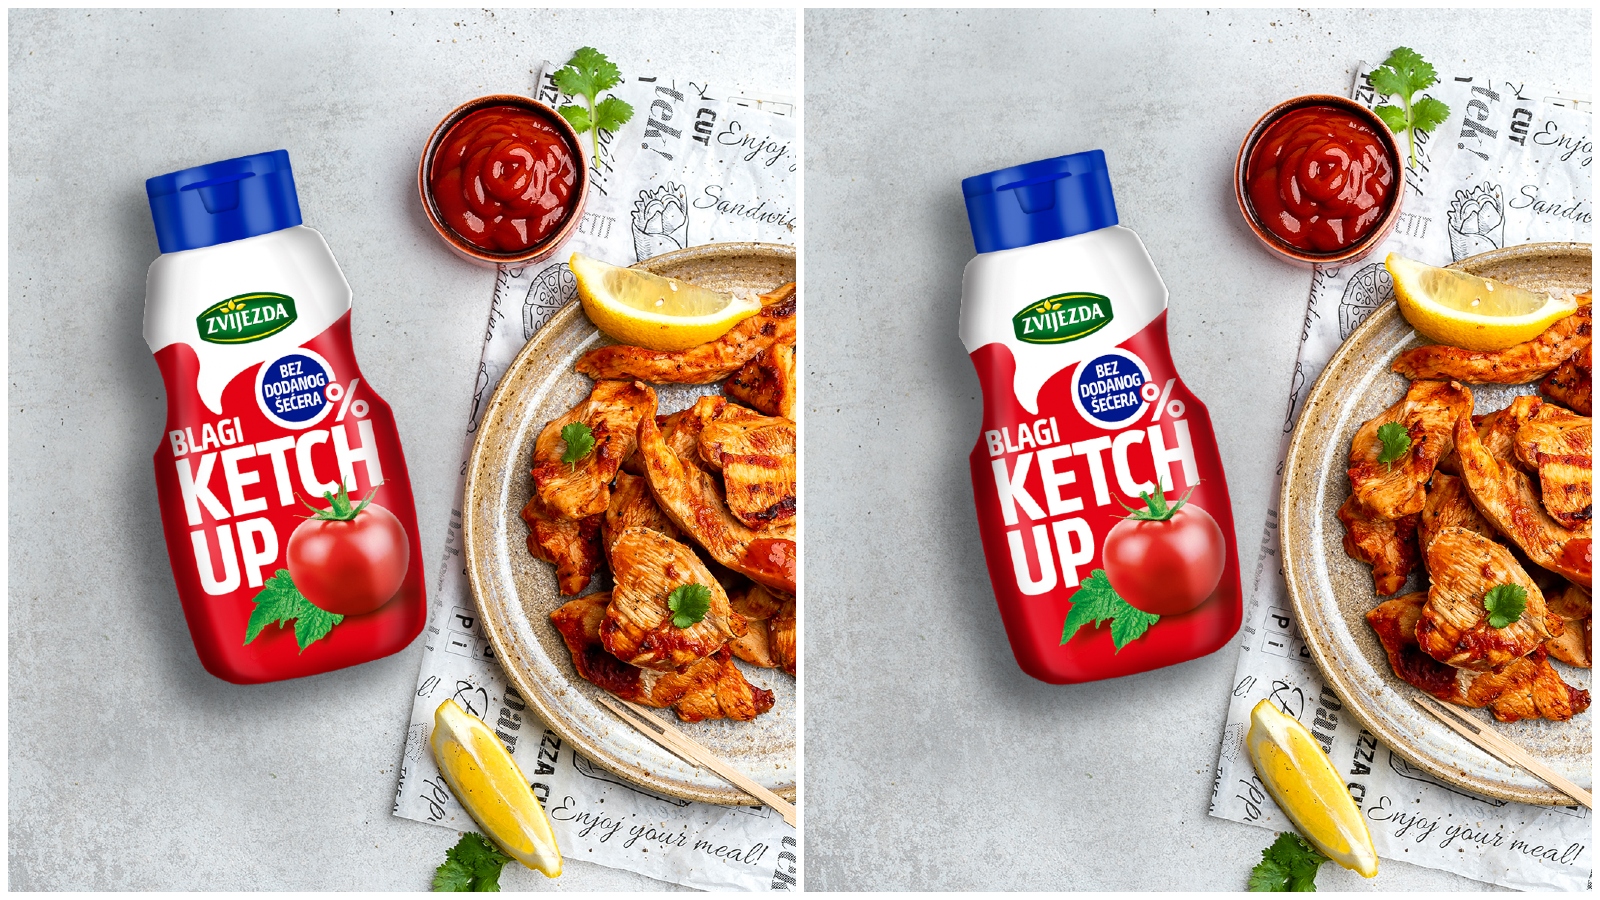 Novi Zvijezda ketchup – 0% dodanog šećera, 50% manje kalorija i 100% najdražeg okusa